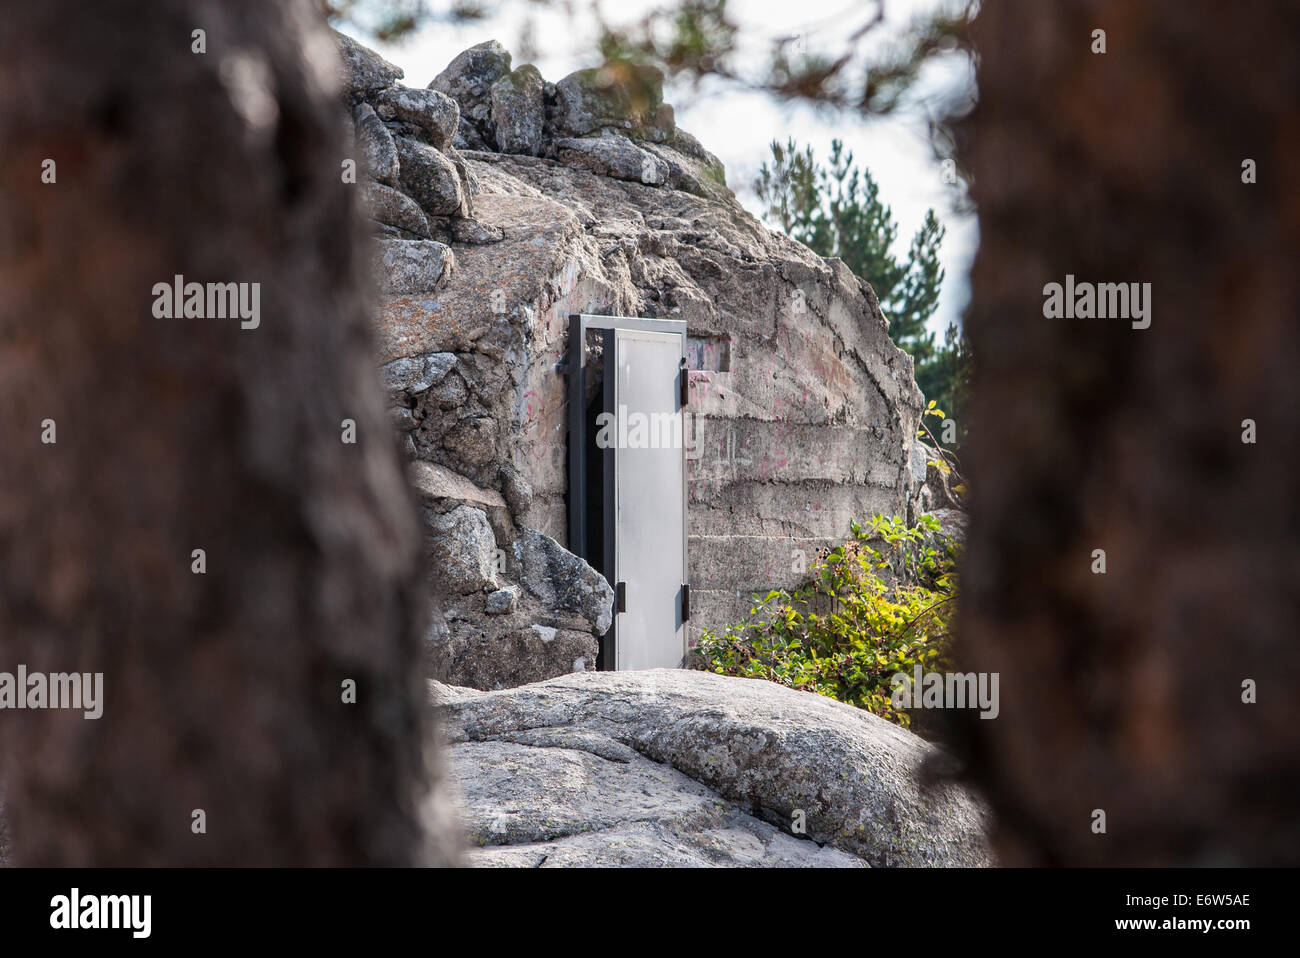 Spanish Civil War Bunker in Guadarrama Mountain Stock Photo